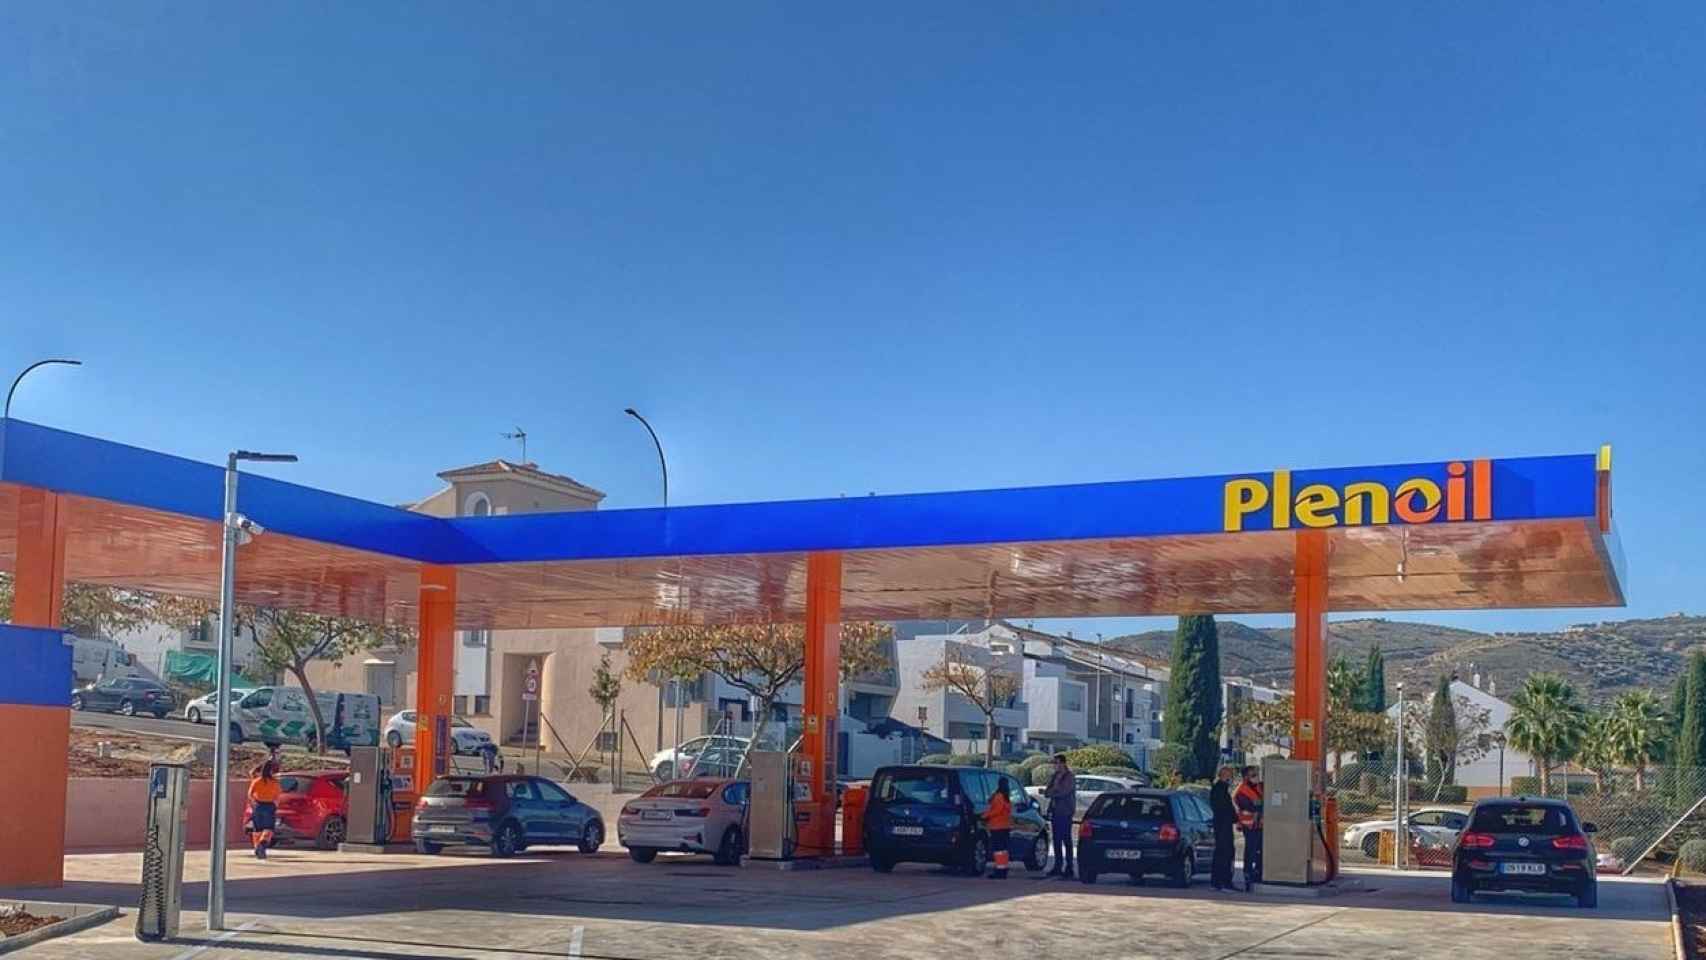 La gasolinera automática Plenoil, rompe moldes: dobla la facturación pese a la Covid